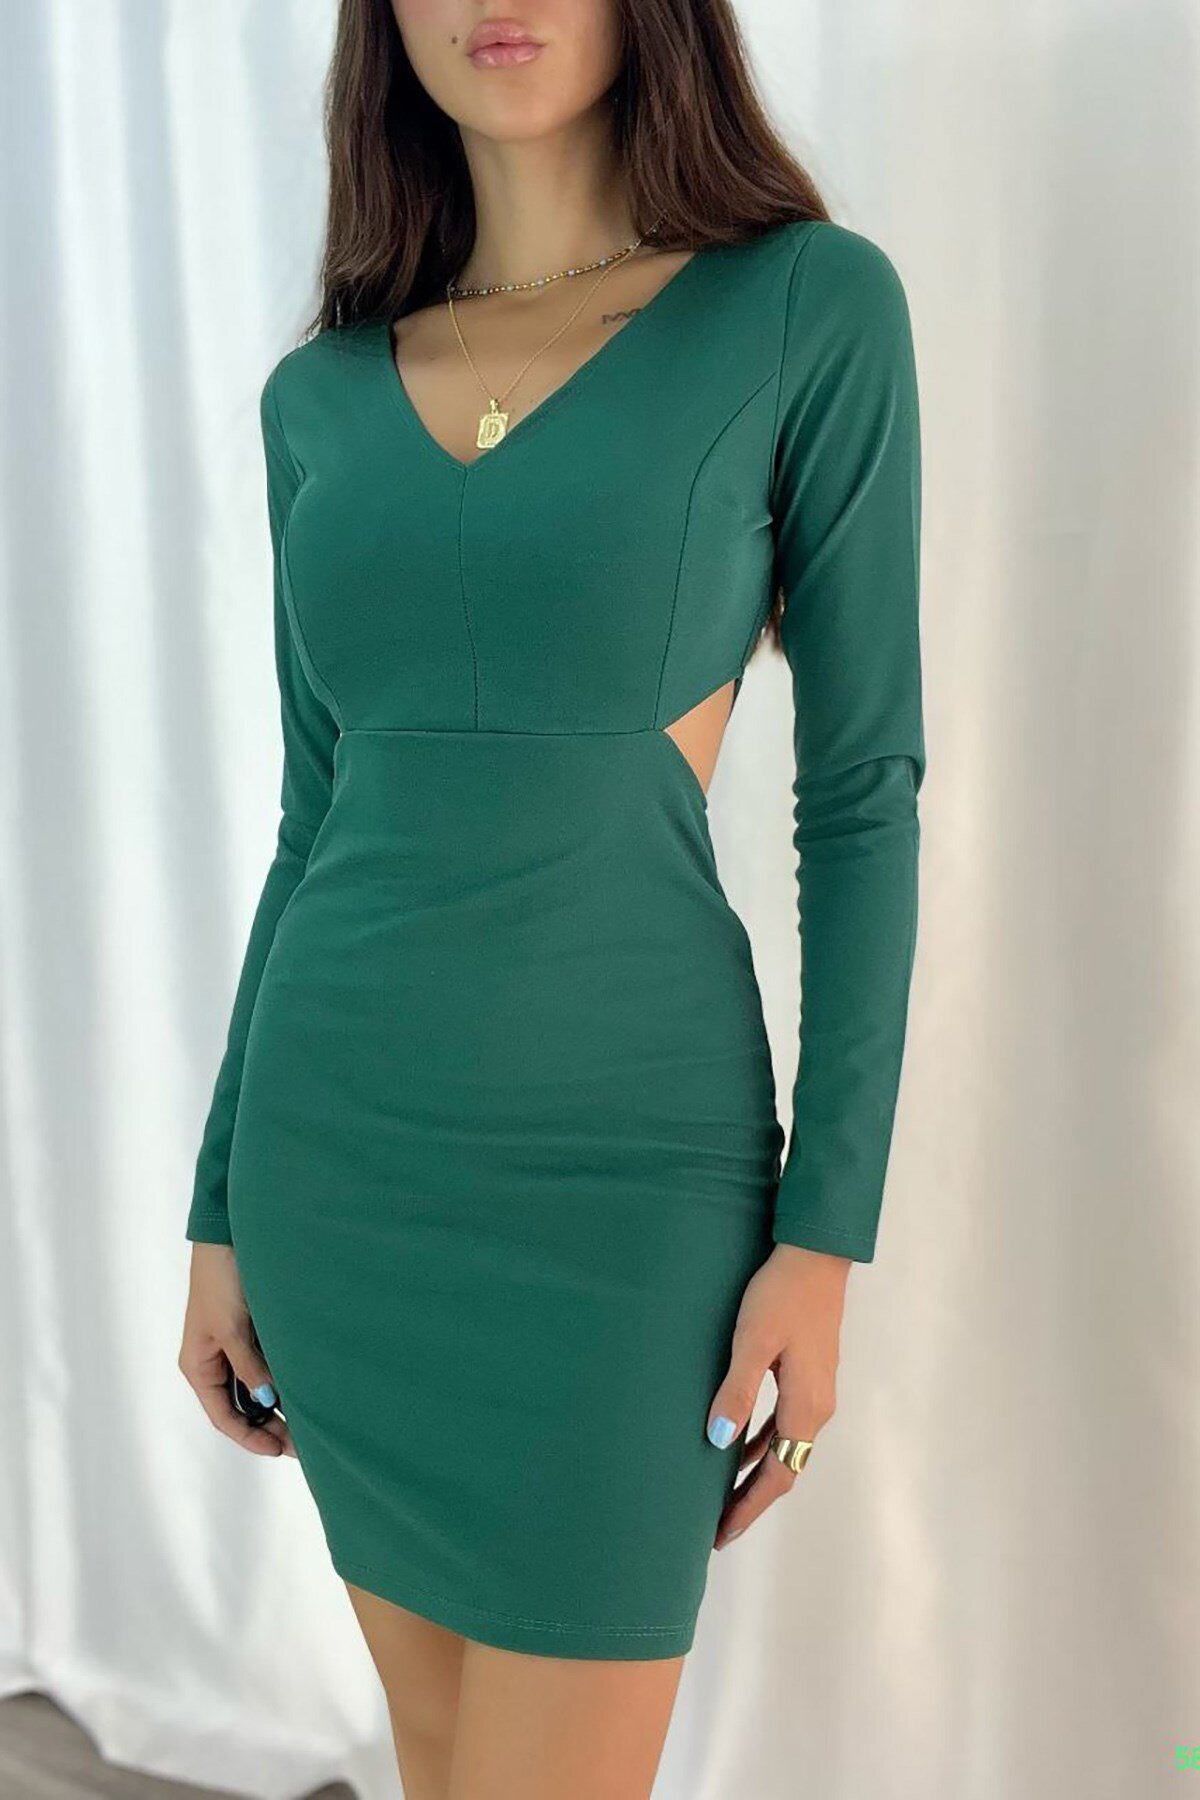 Deafox Yeşil İthal Krep Kumaş Uzun Kollu Bel Dekolteli Mini Elbise